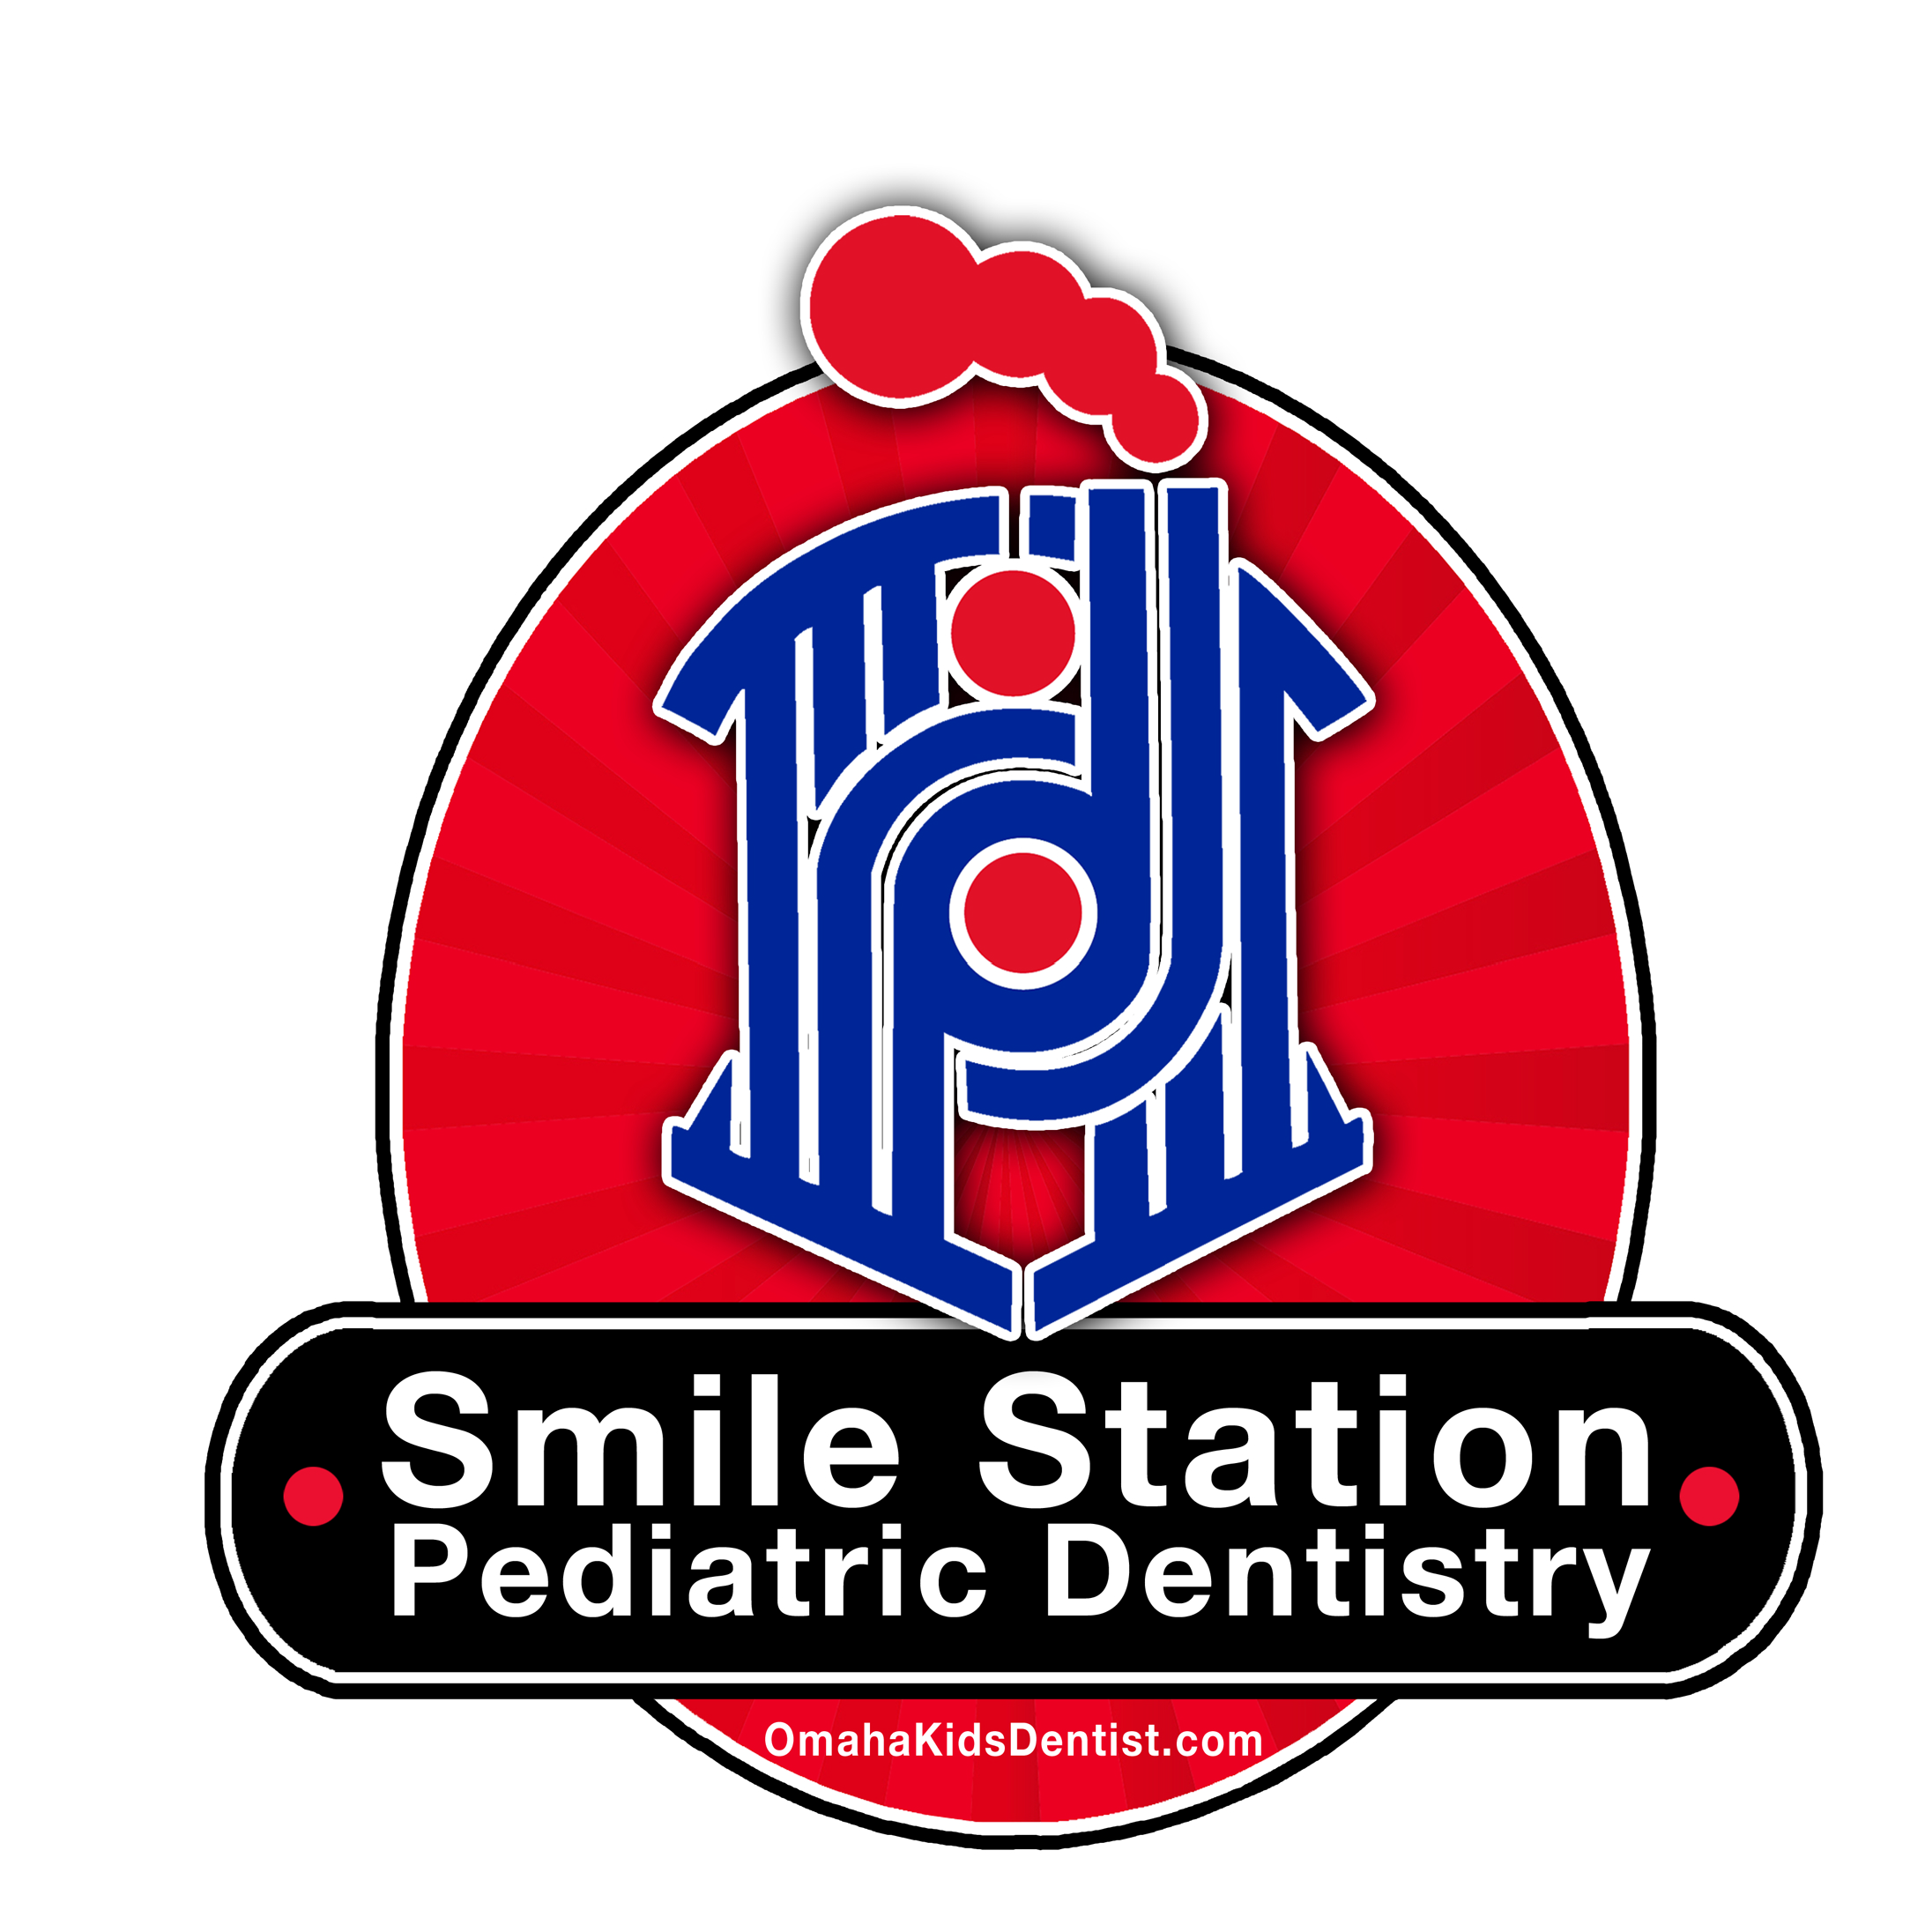 SMILE Stationnwlogofn 500